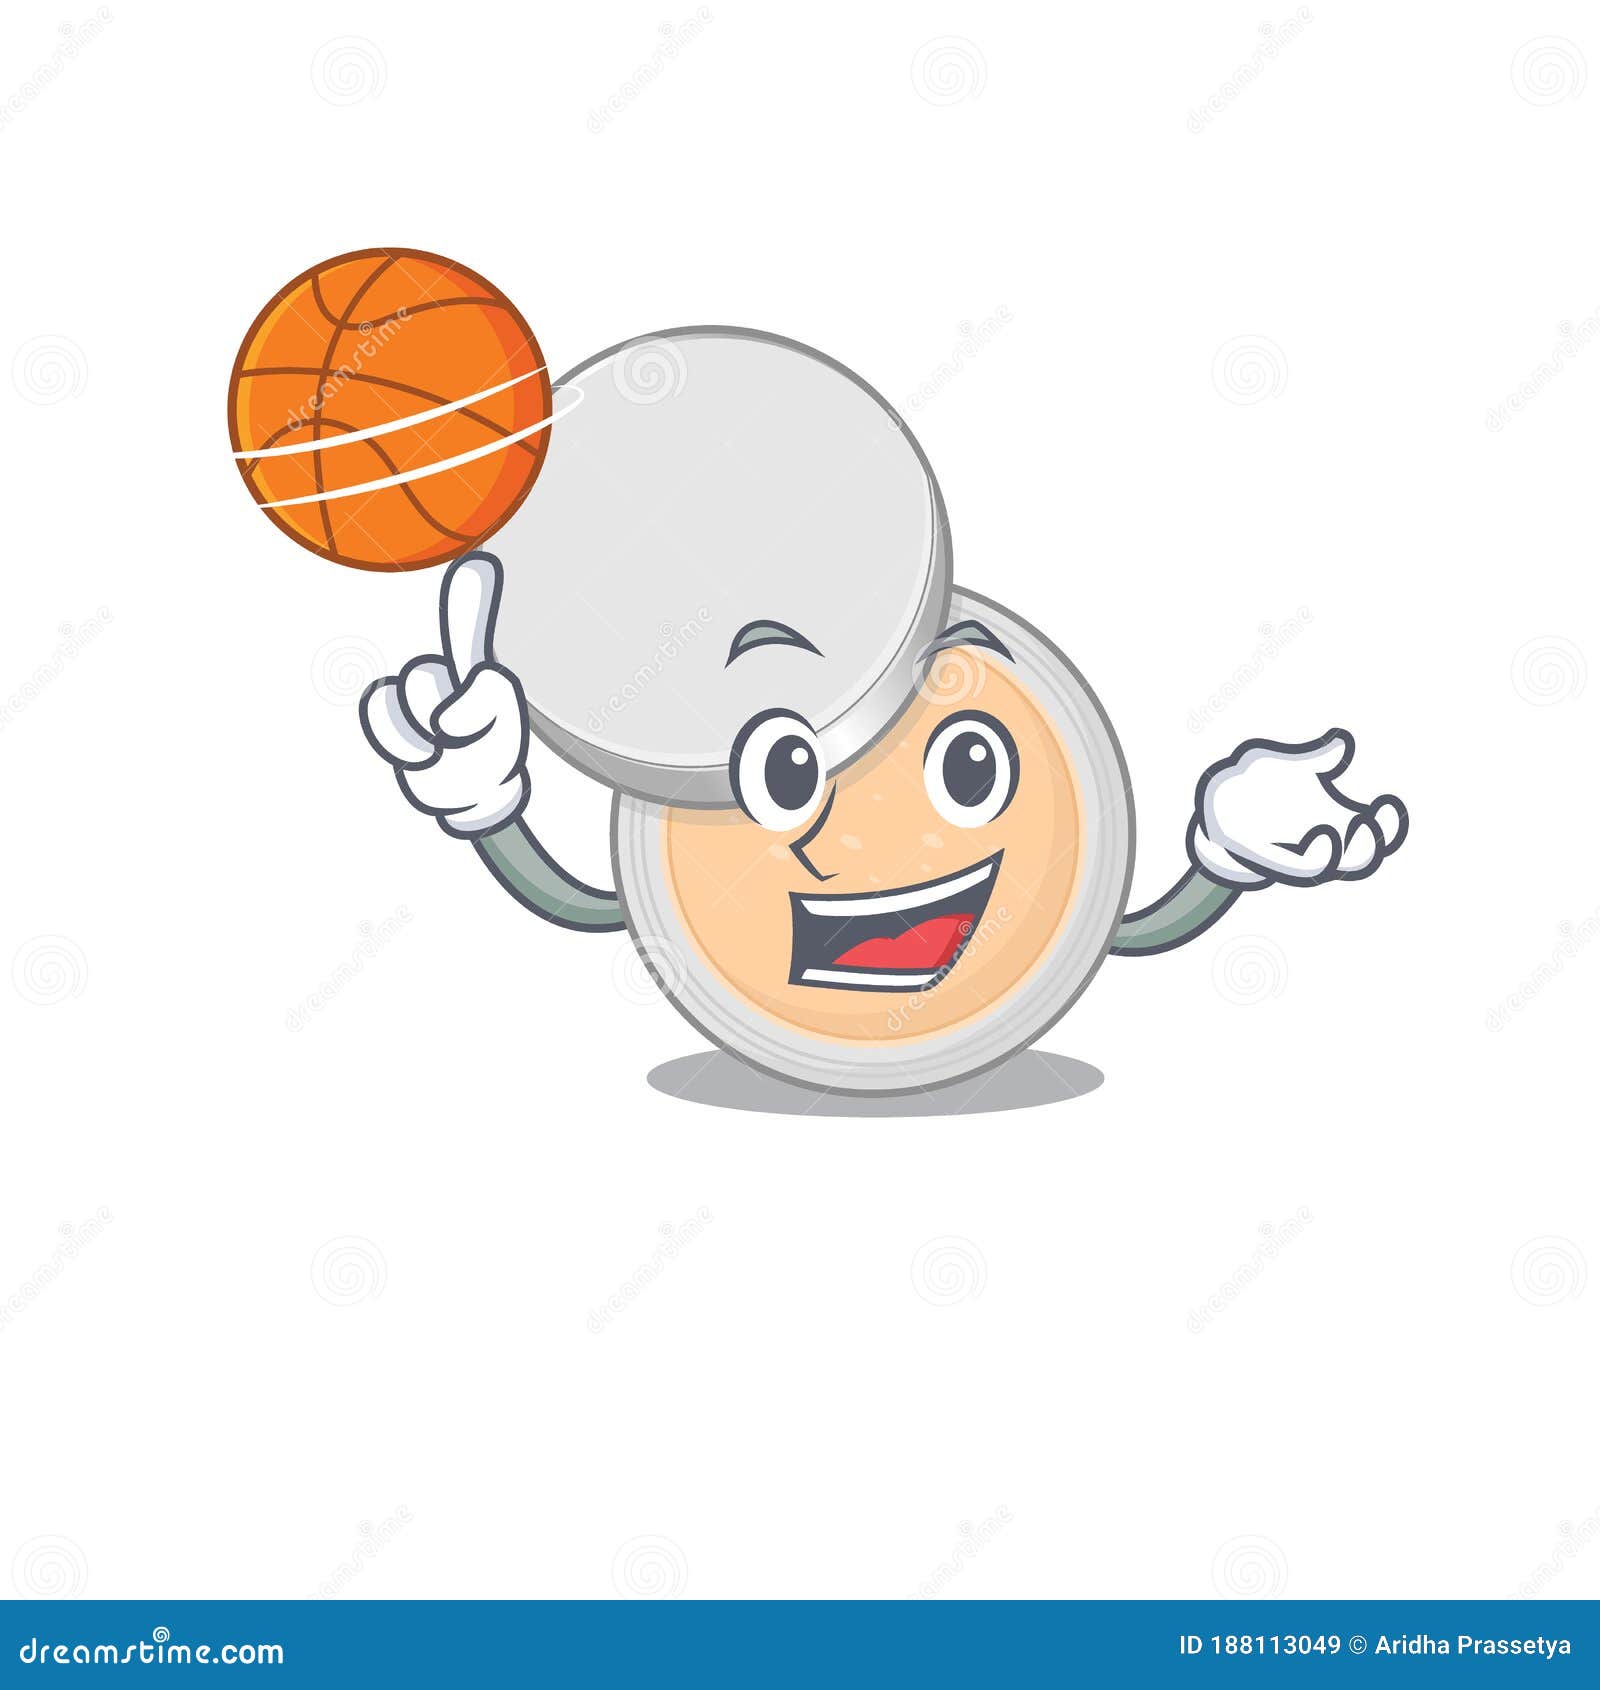 Basketball Transparent Stock Illustrations – 1,547 Basketball Transparent  Stock Illustrations, Vectors & Clipart - Dreamstime